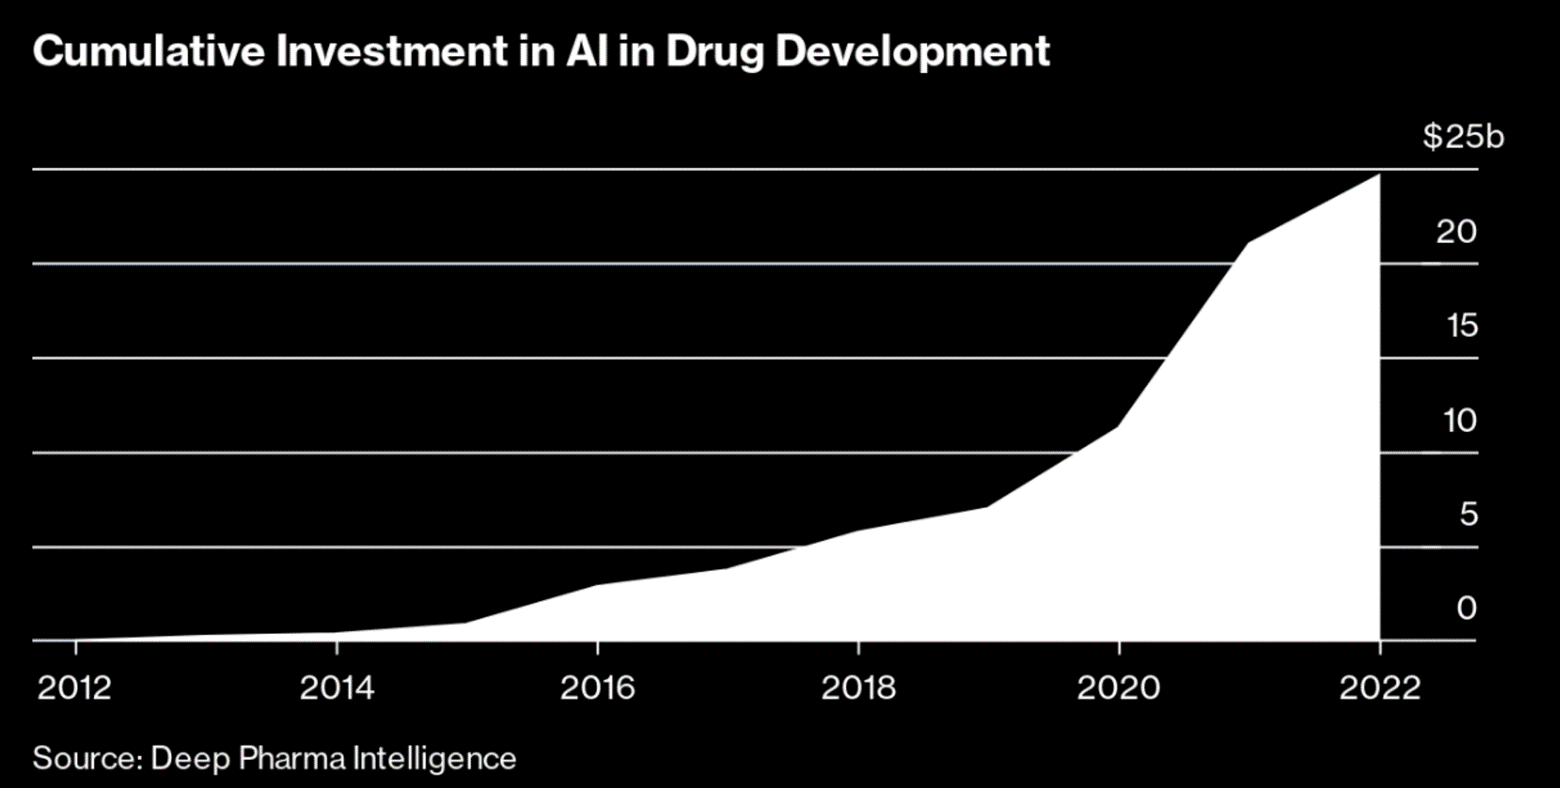 Cumulative investment in AI drug development